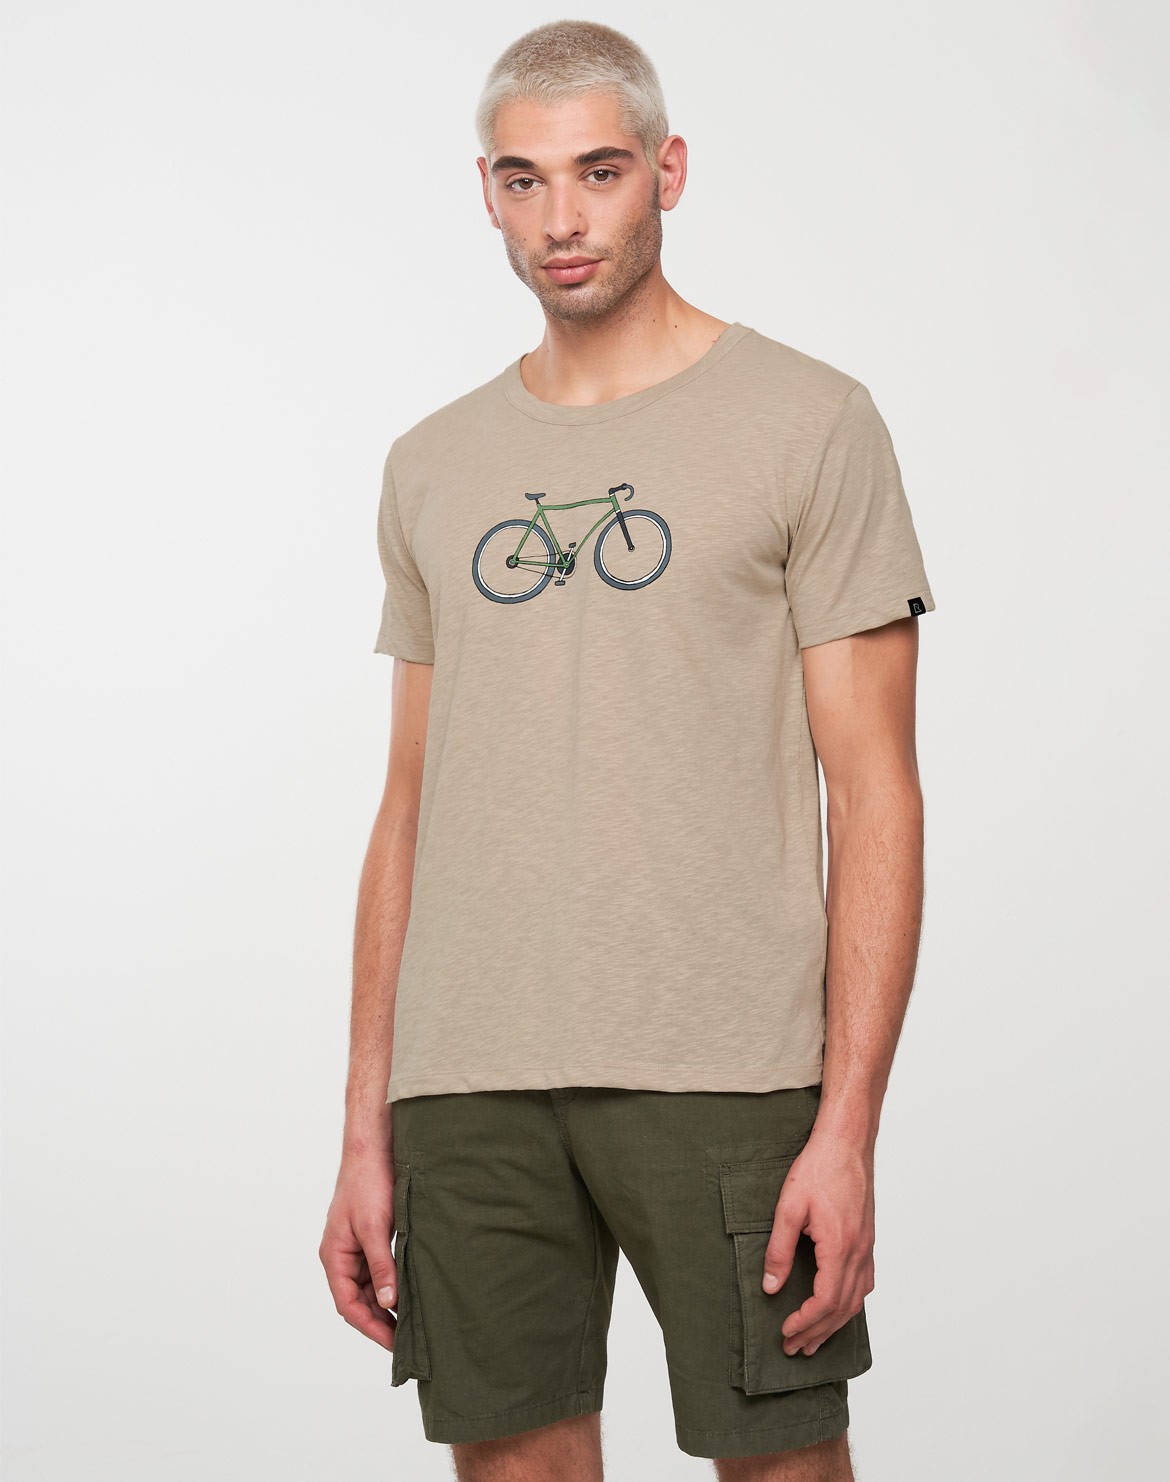 Bay Bike T-Shirt